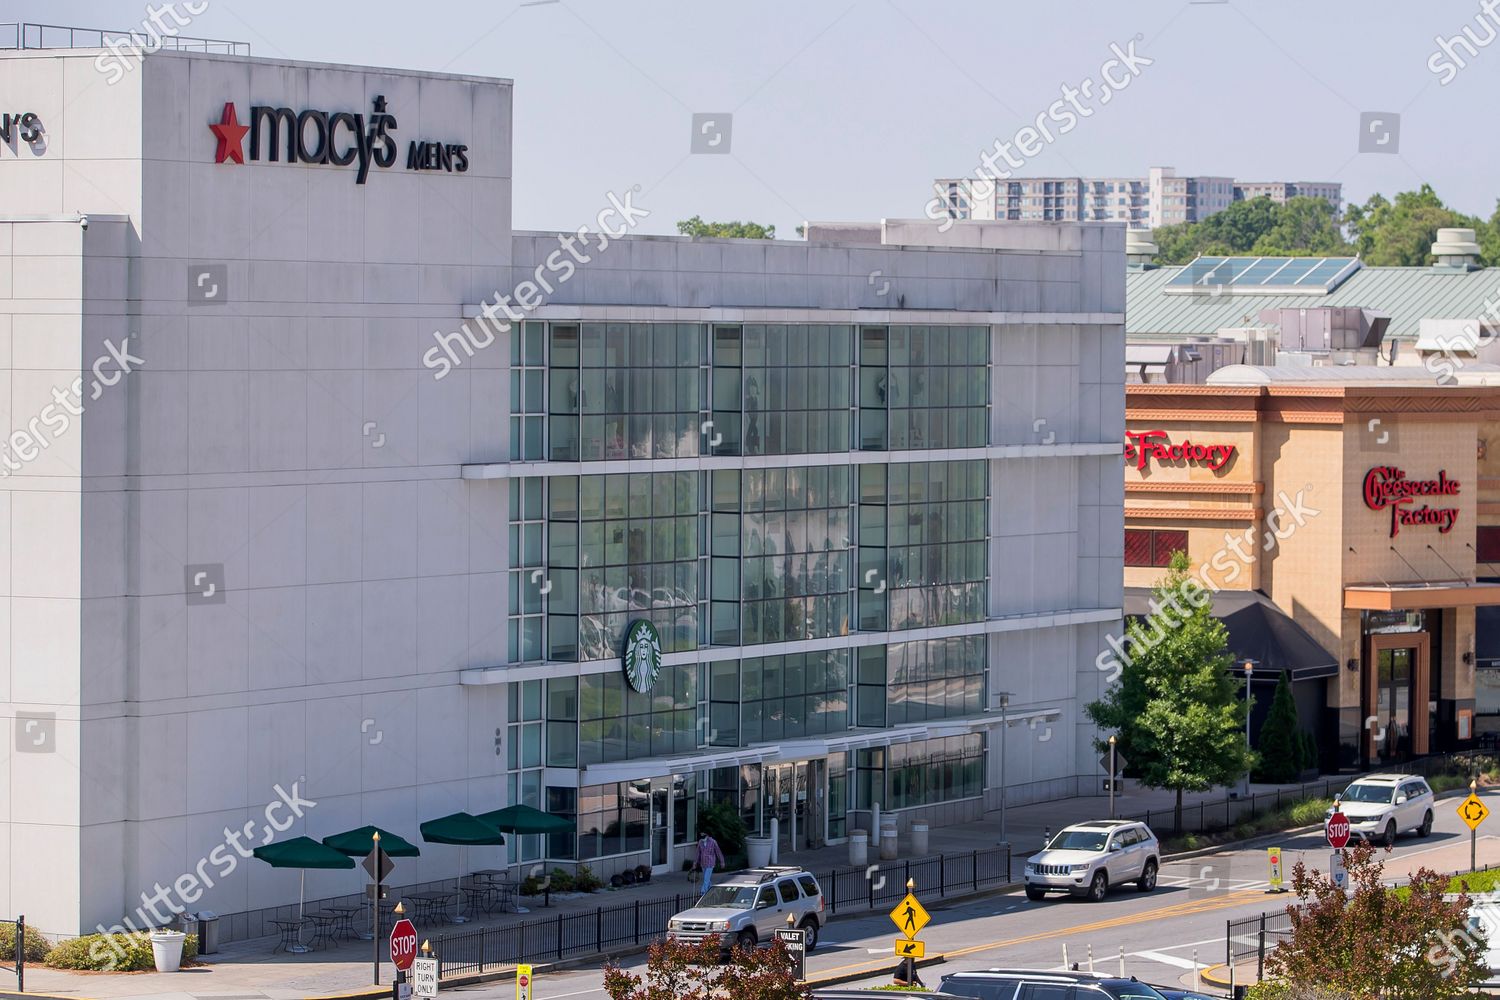 Simon Property Group to reopen Georgia malls - Atlanta Business